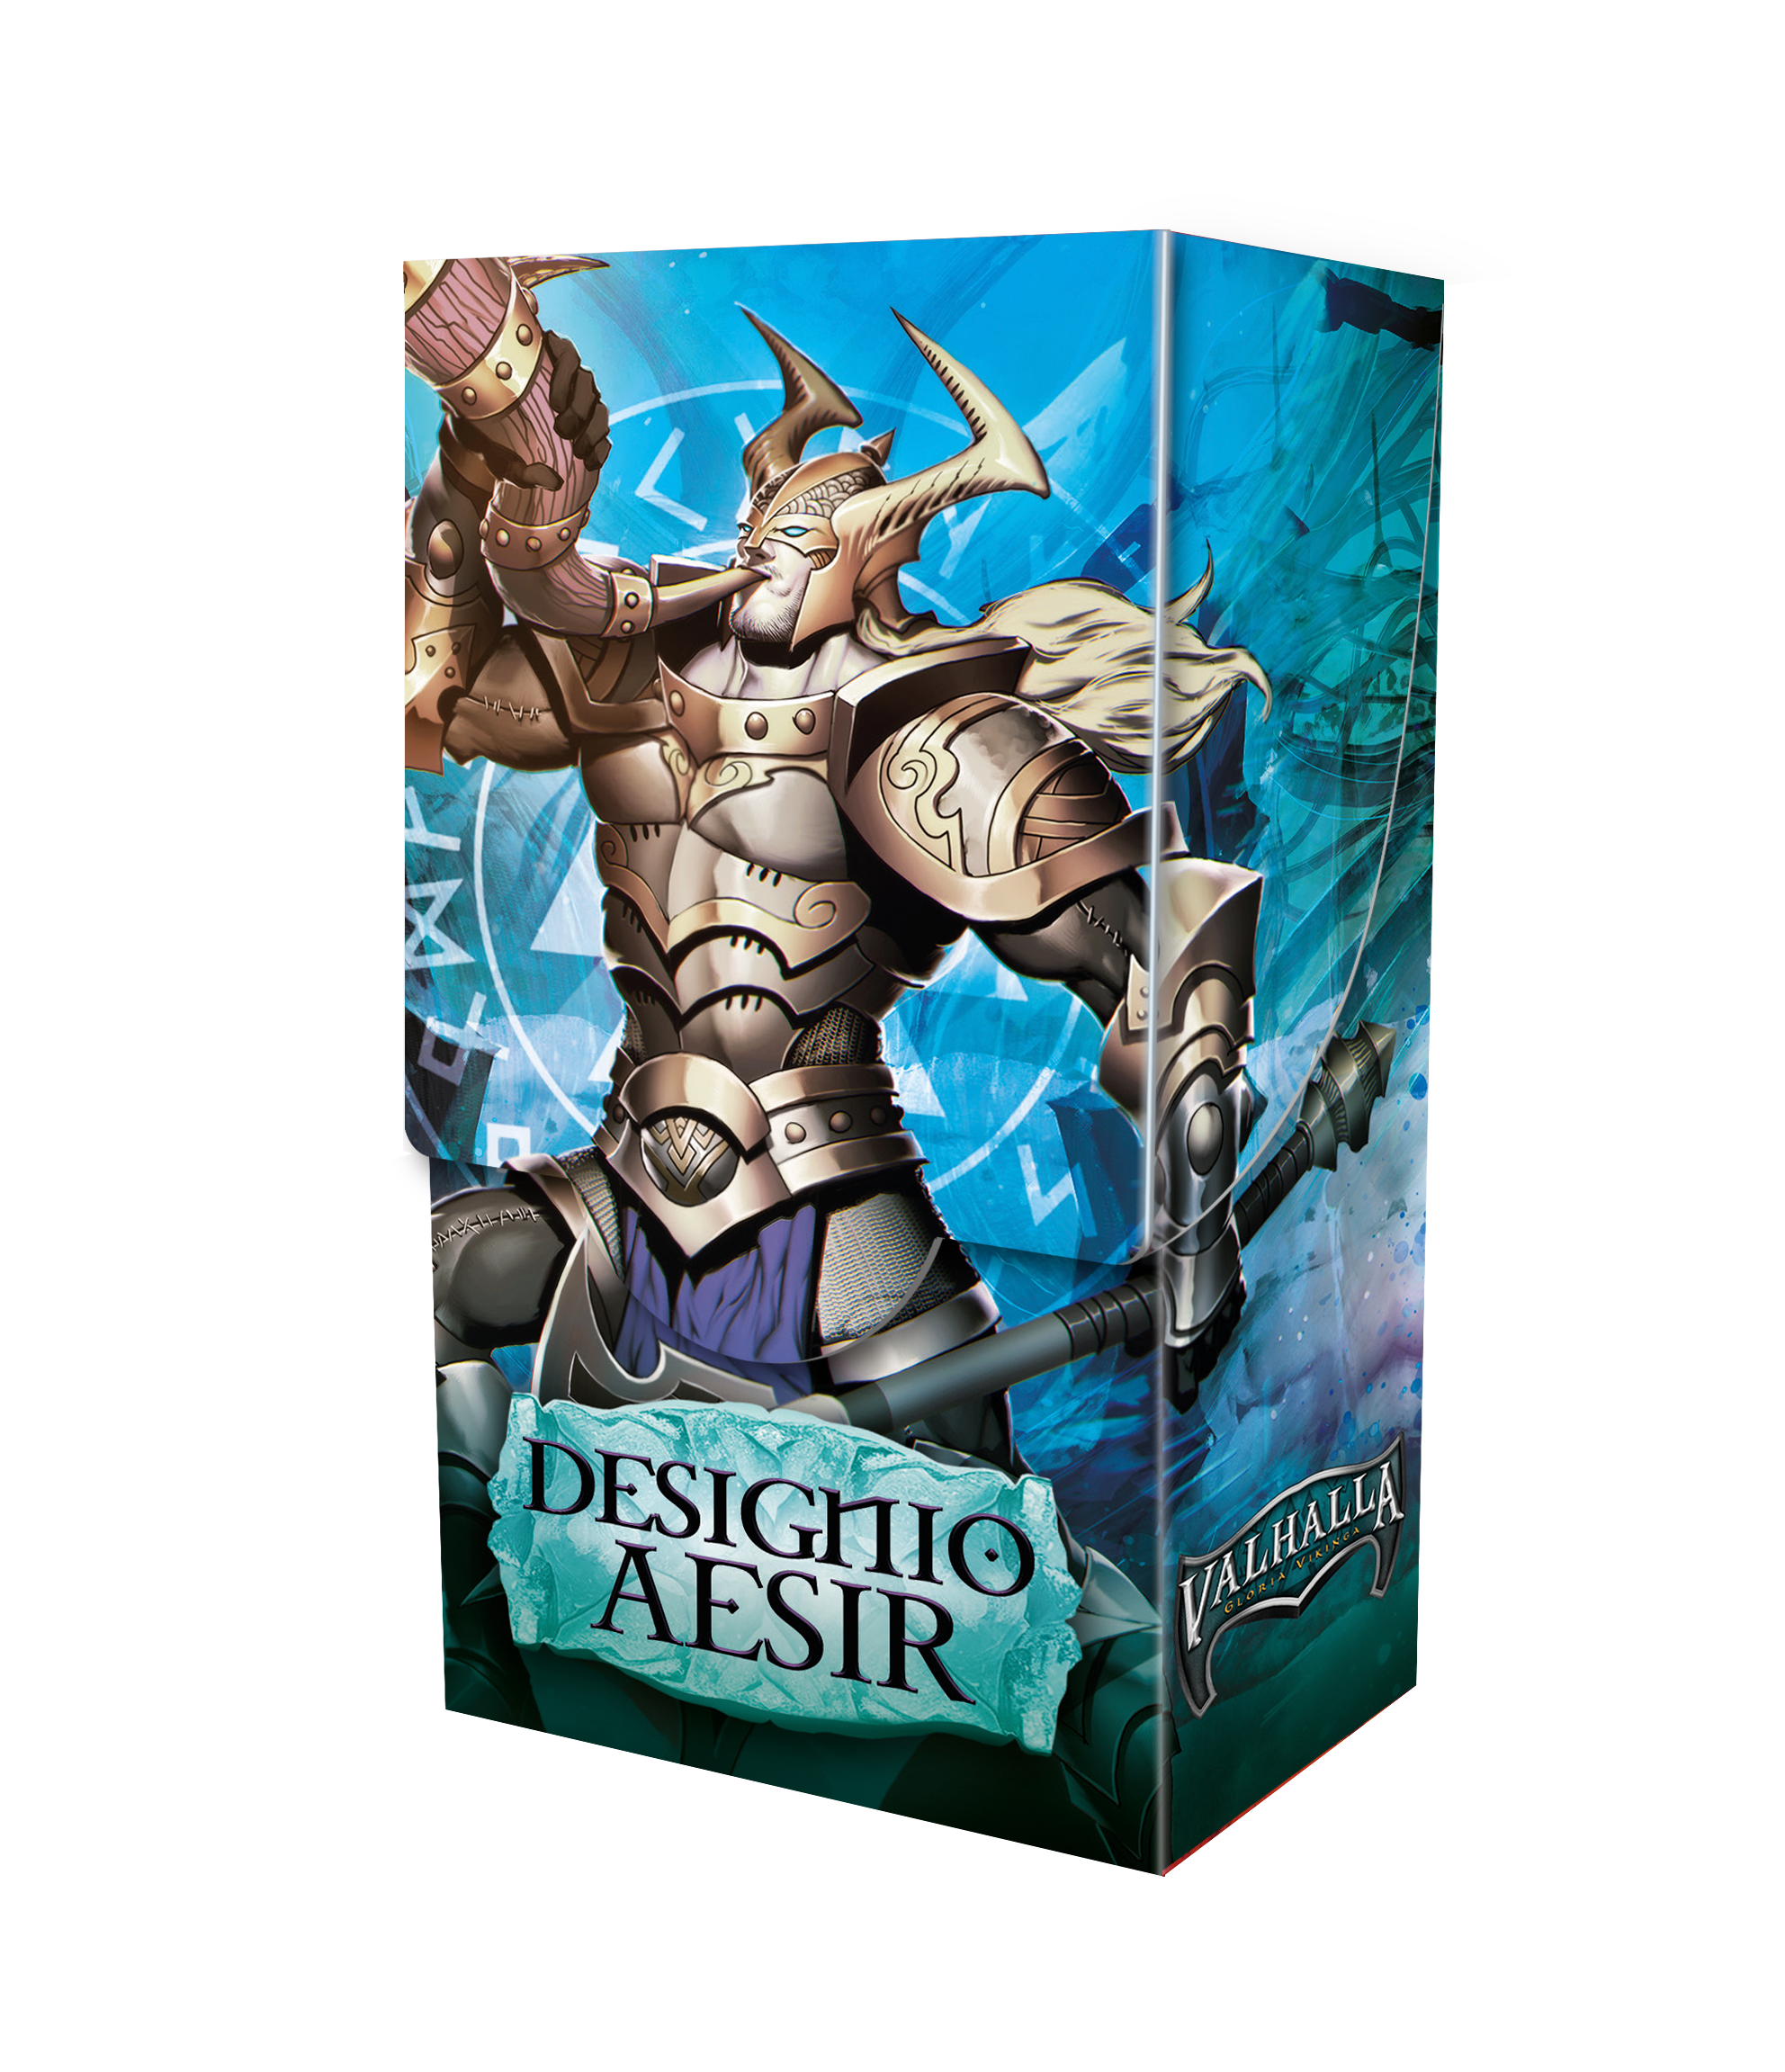 Kit de Batalla Valhalla Designio Aesir | Devastation Store